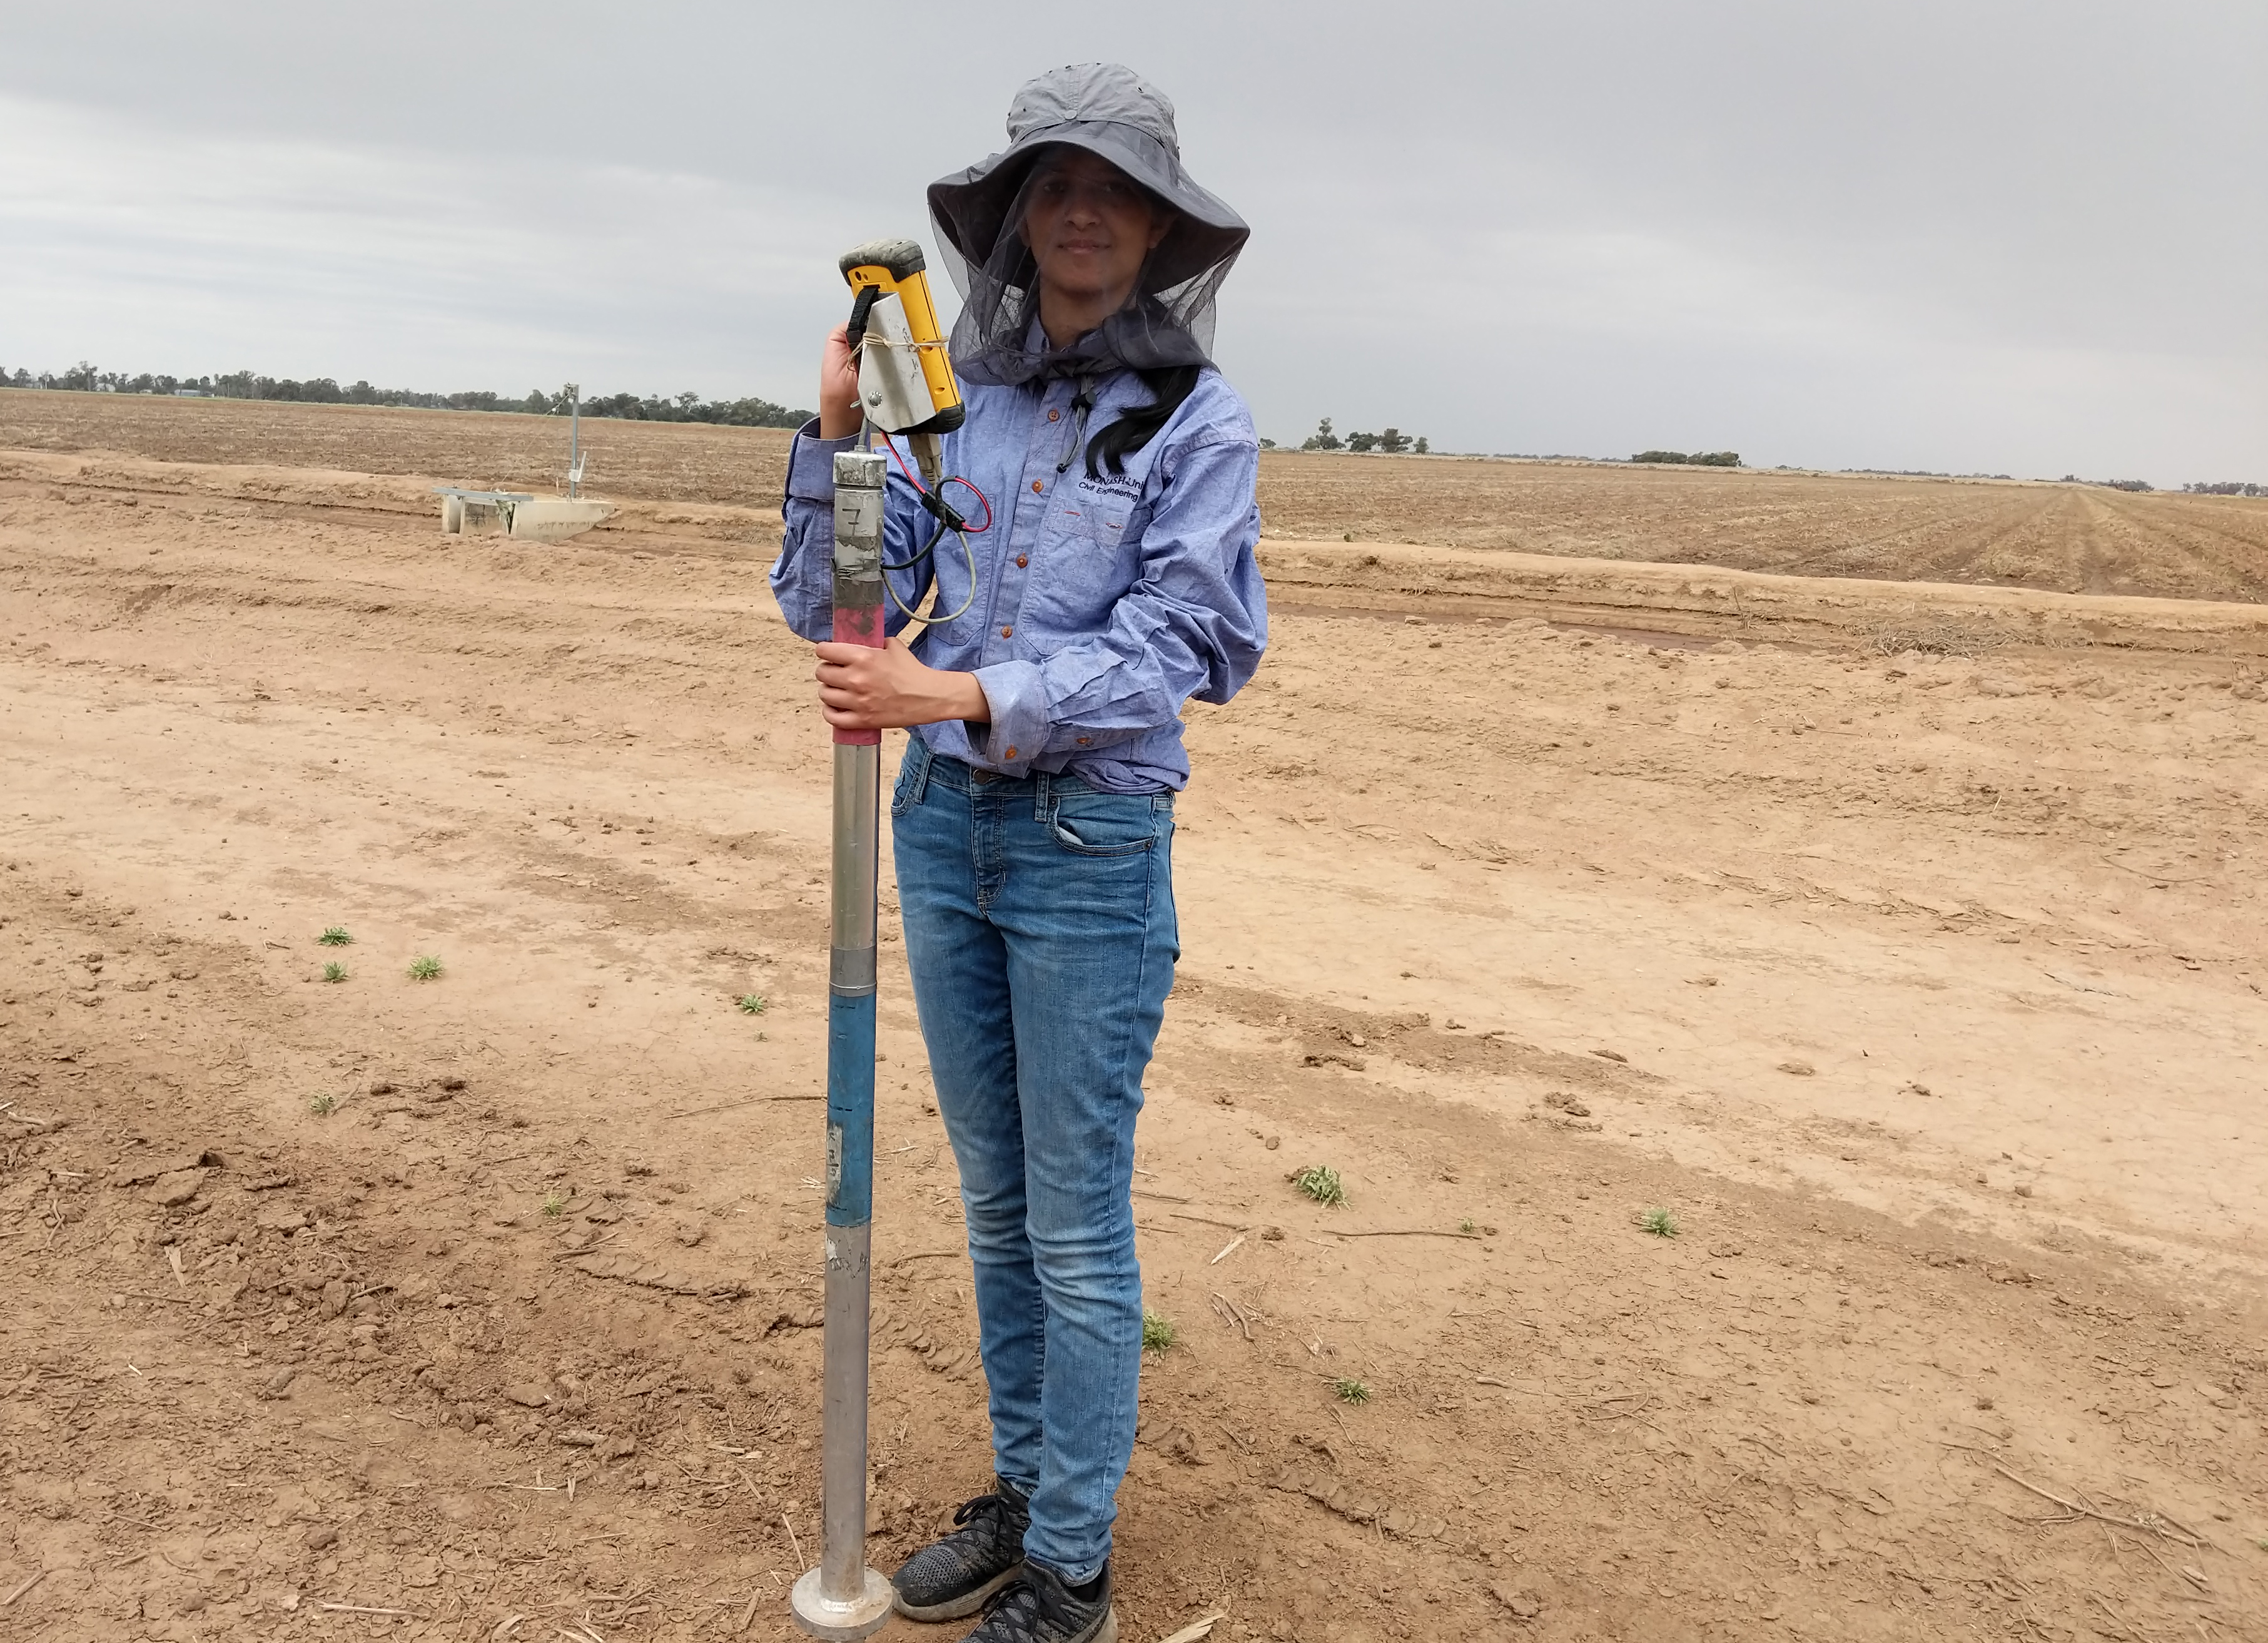 PhD student testing soil moisture in rural Australia